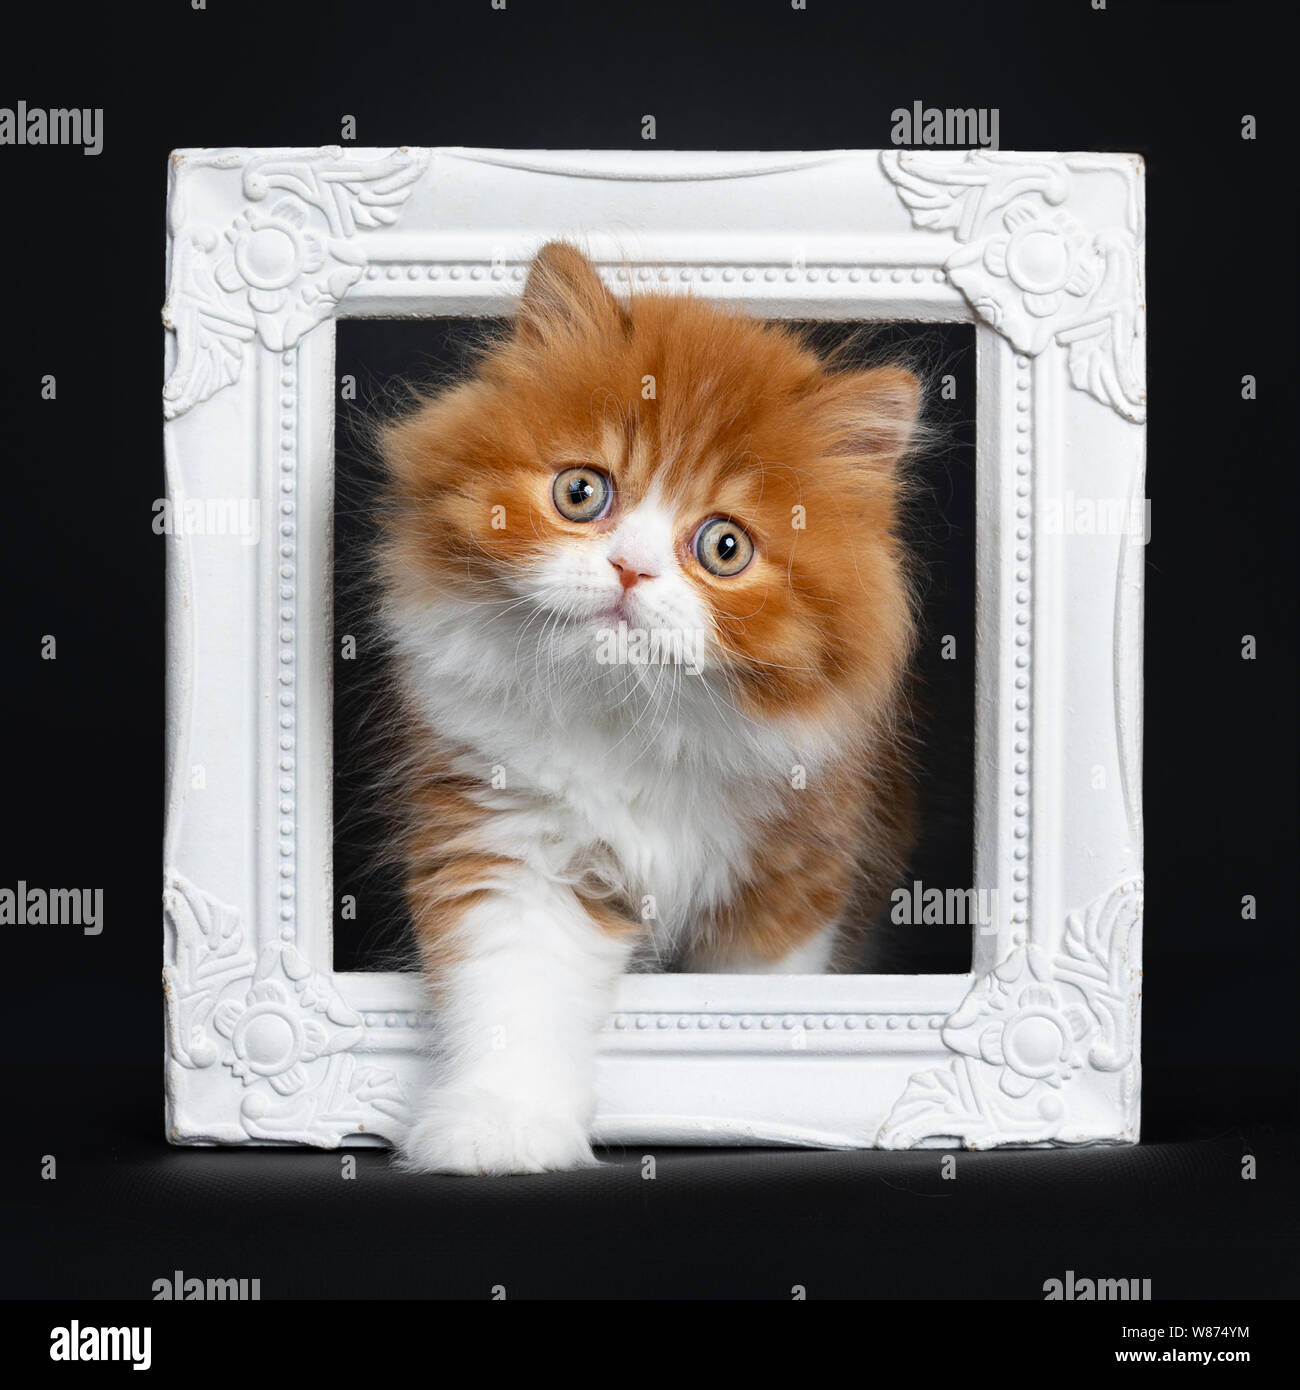 Adorable rojo con blanco British Longhair cat kitten, a través de documentación fotográfica permanente. Mirando a la cámara con grandes ojos redondos. Aislado en la parte posterior negra Foto de stock